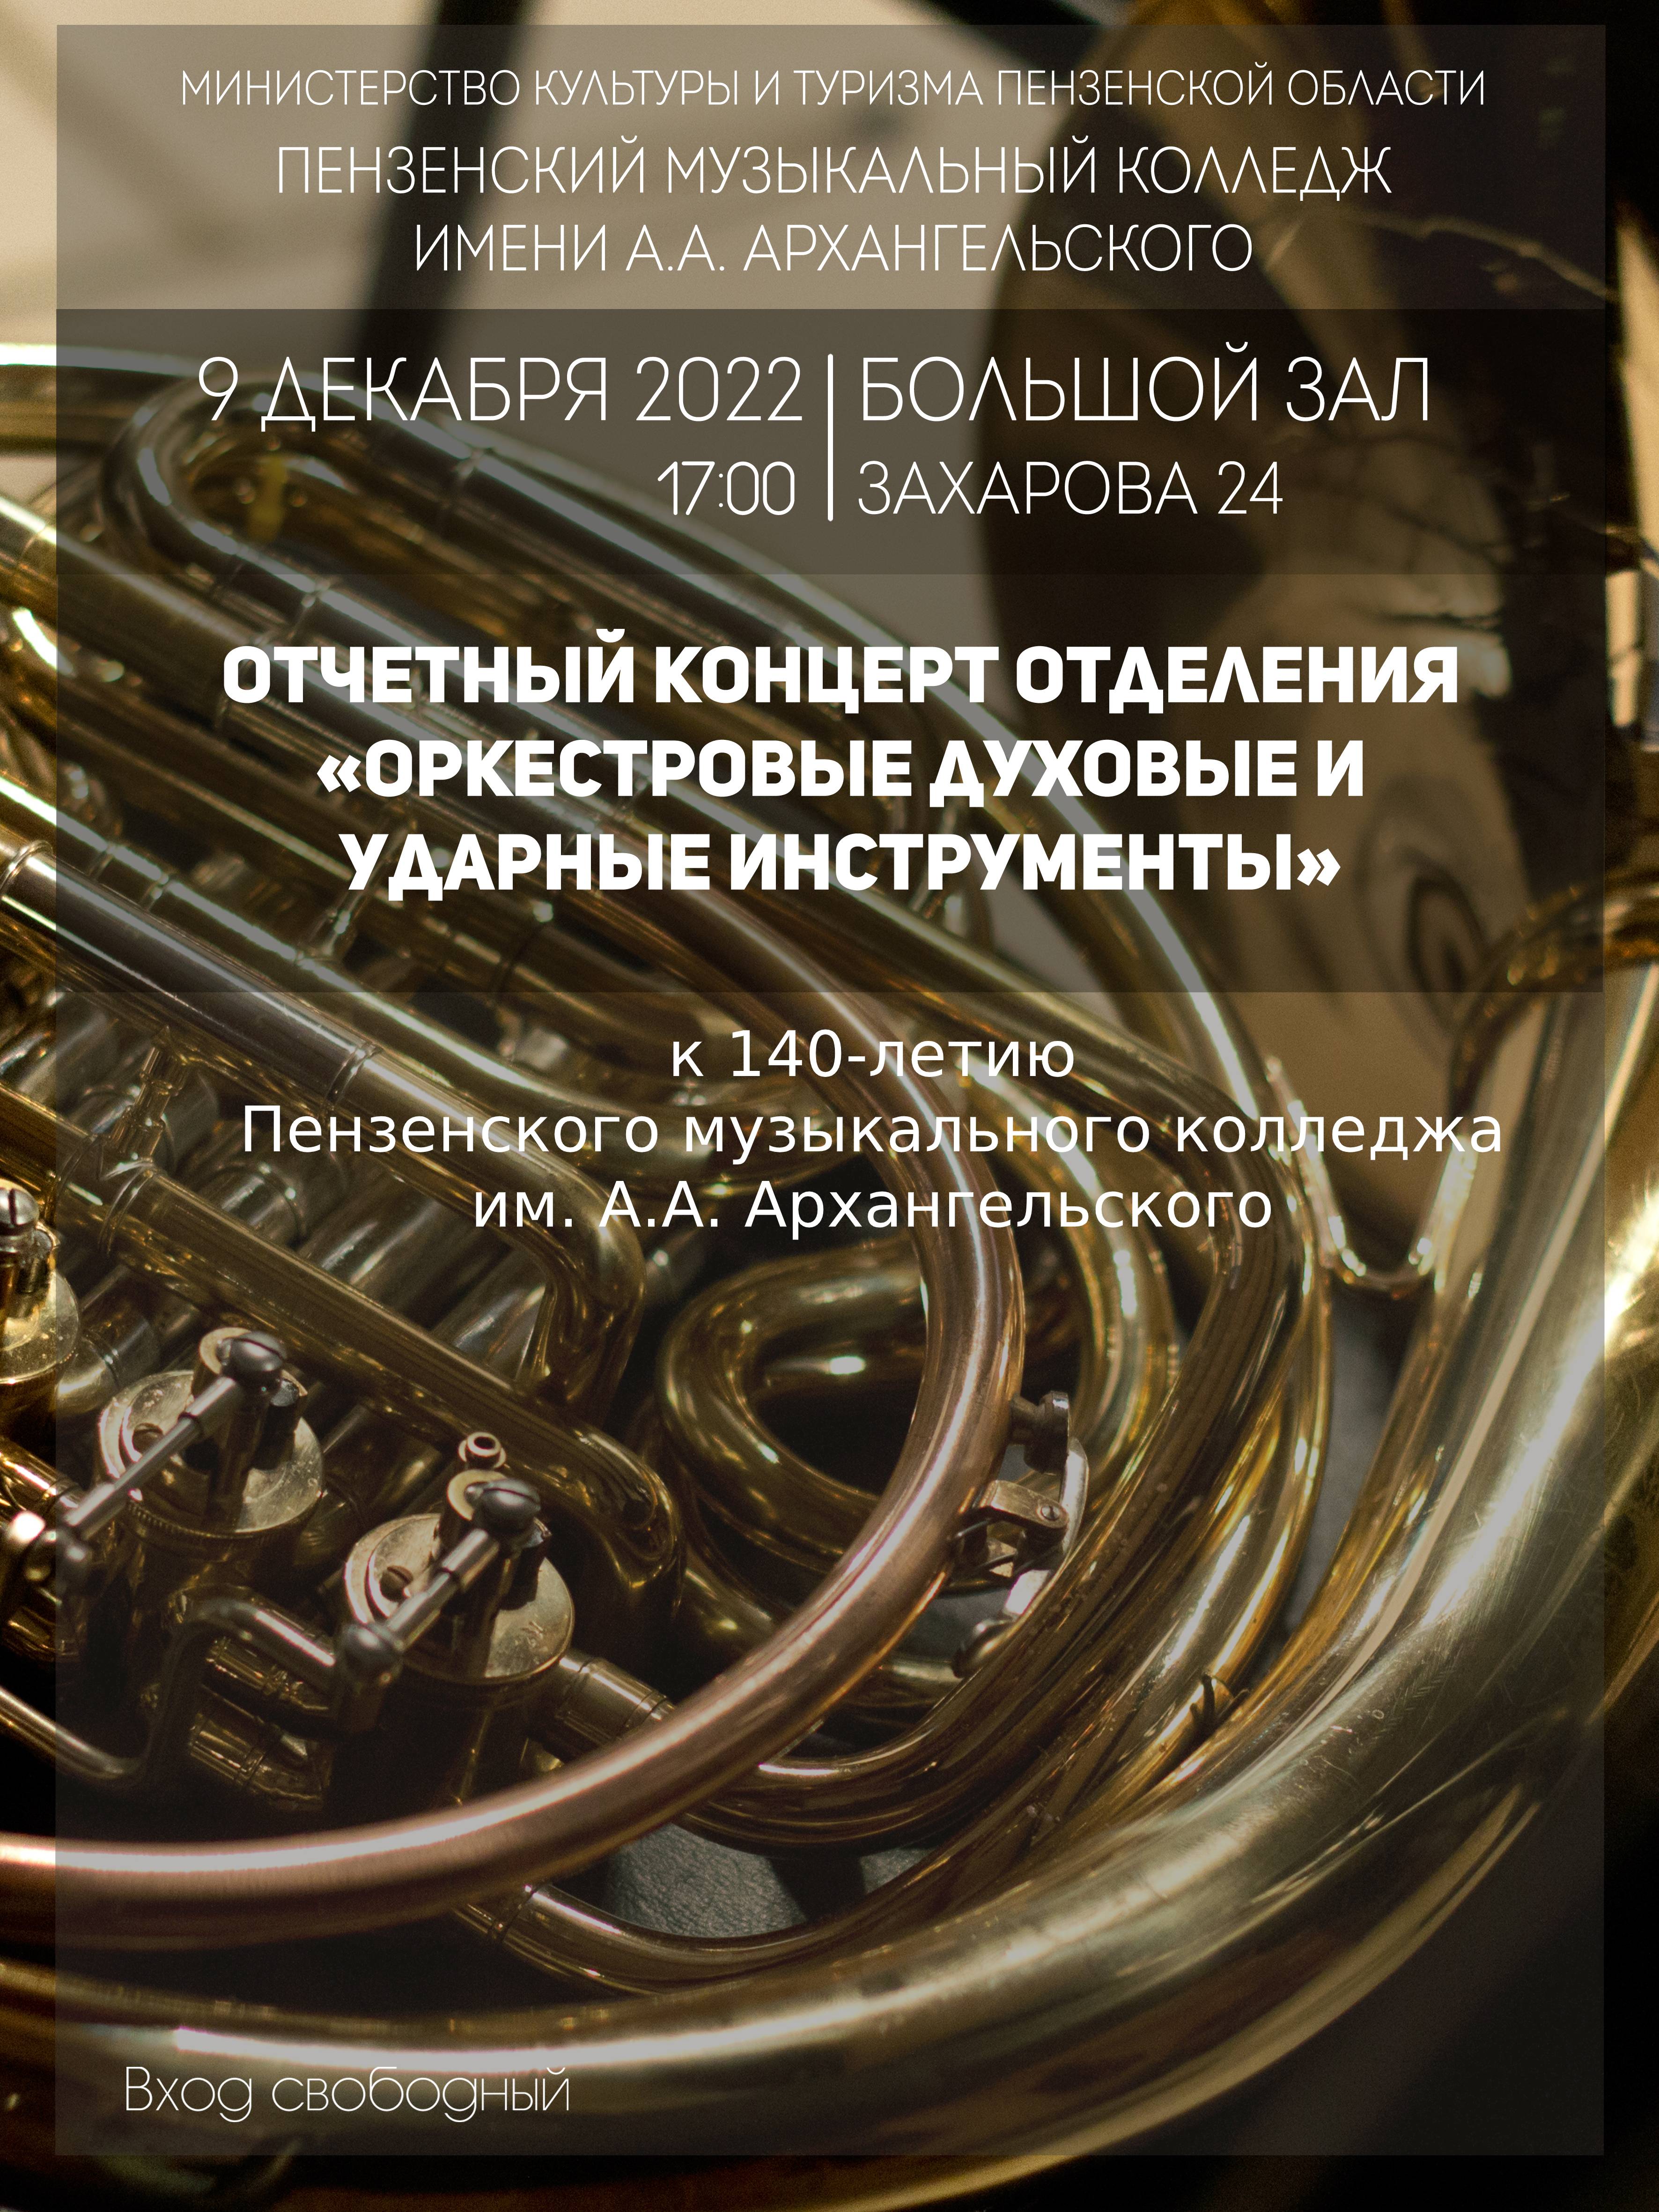 Отчетный концерт отделения "Оркестровые духовые и ударные инструменты"